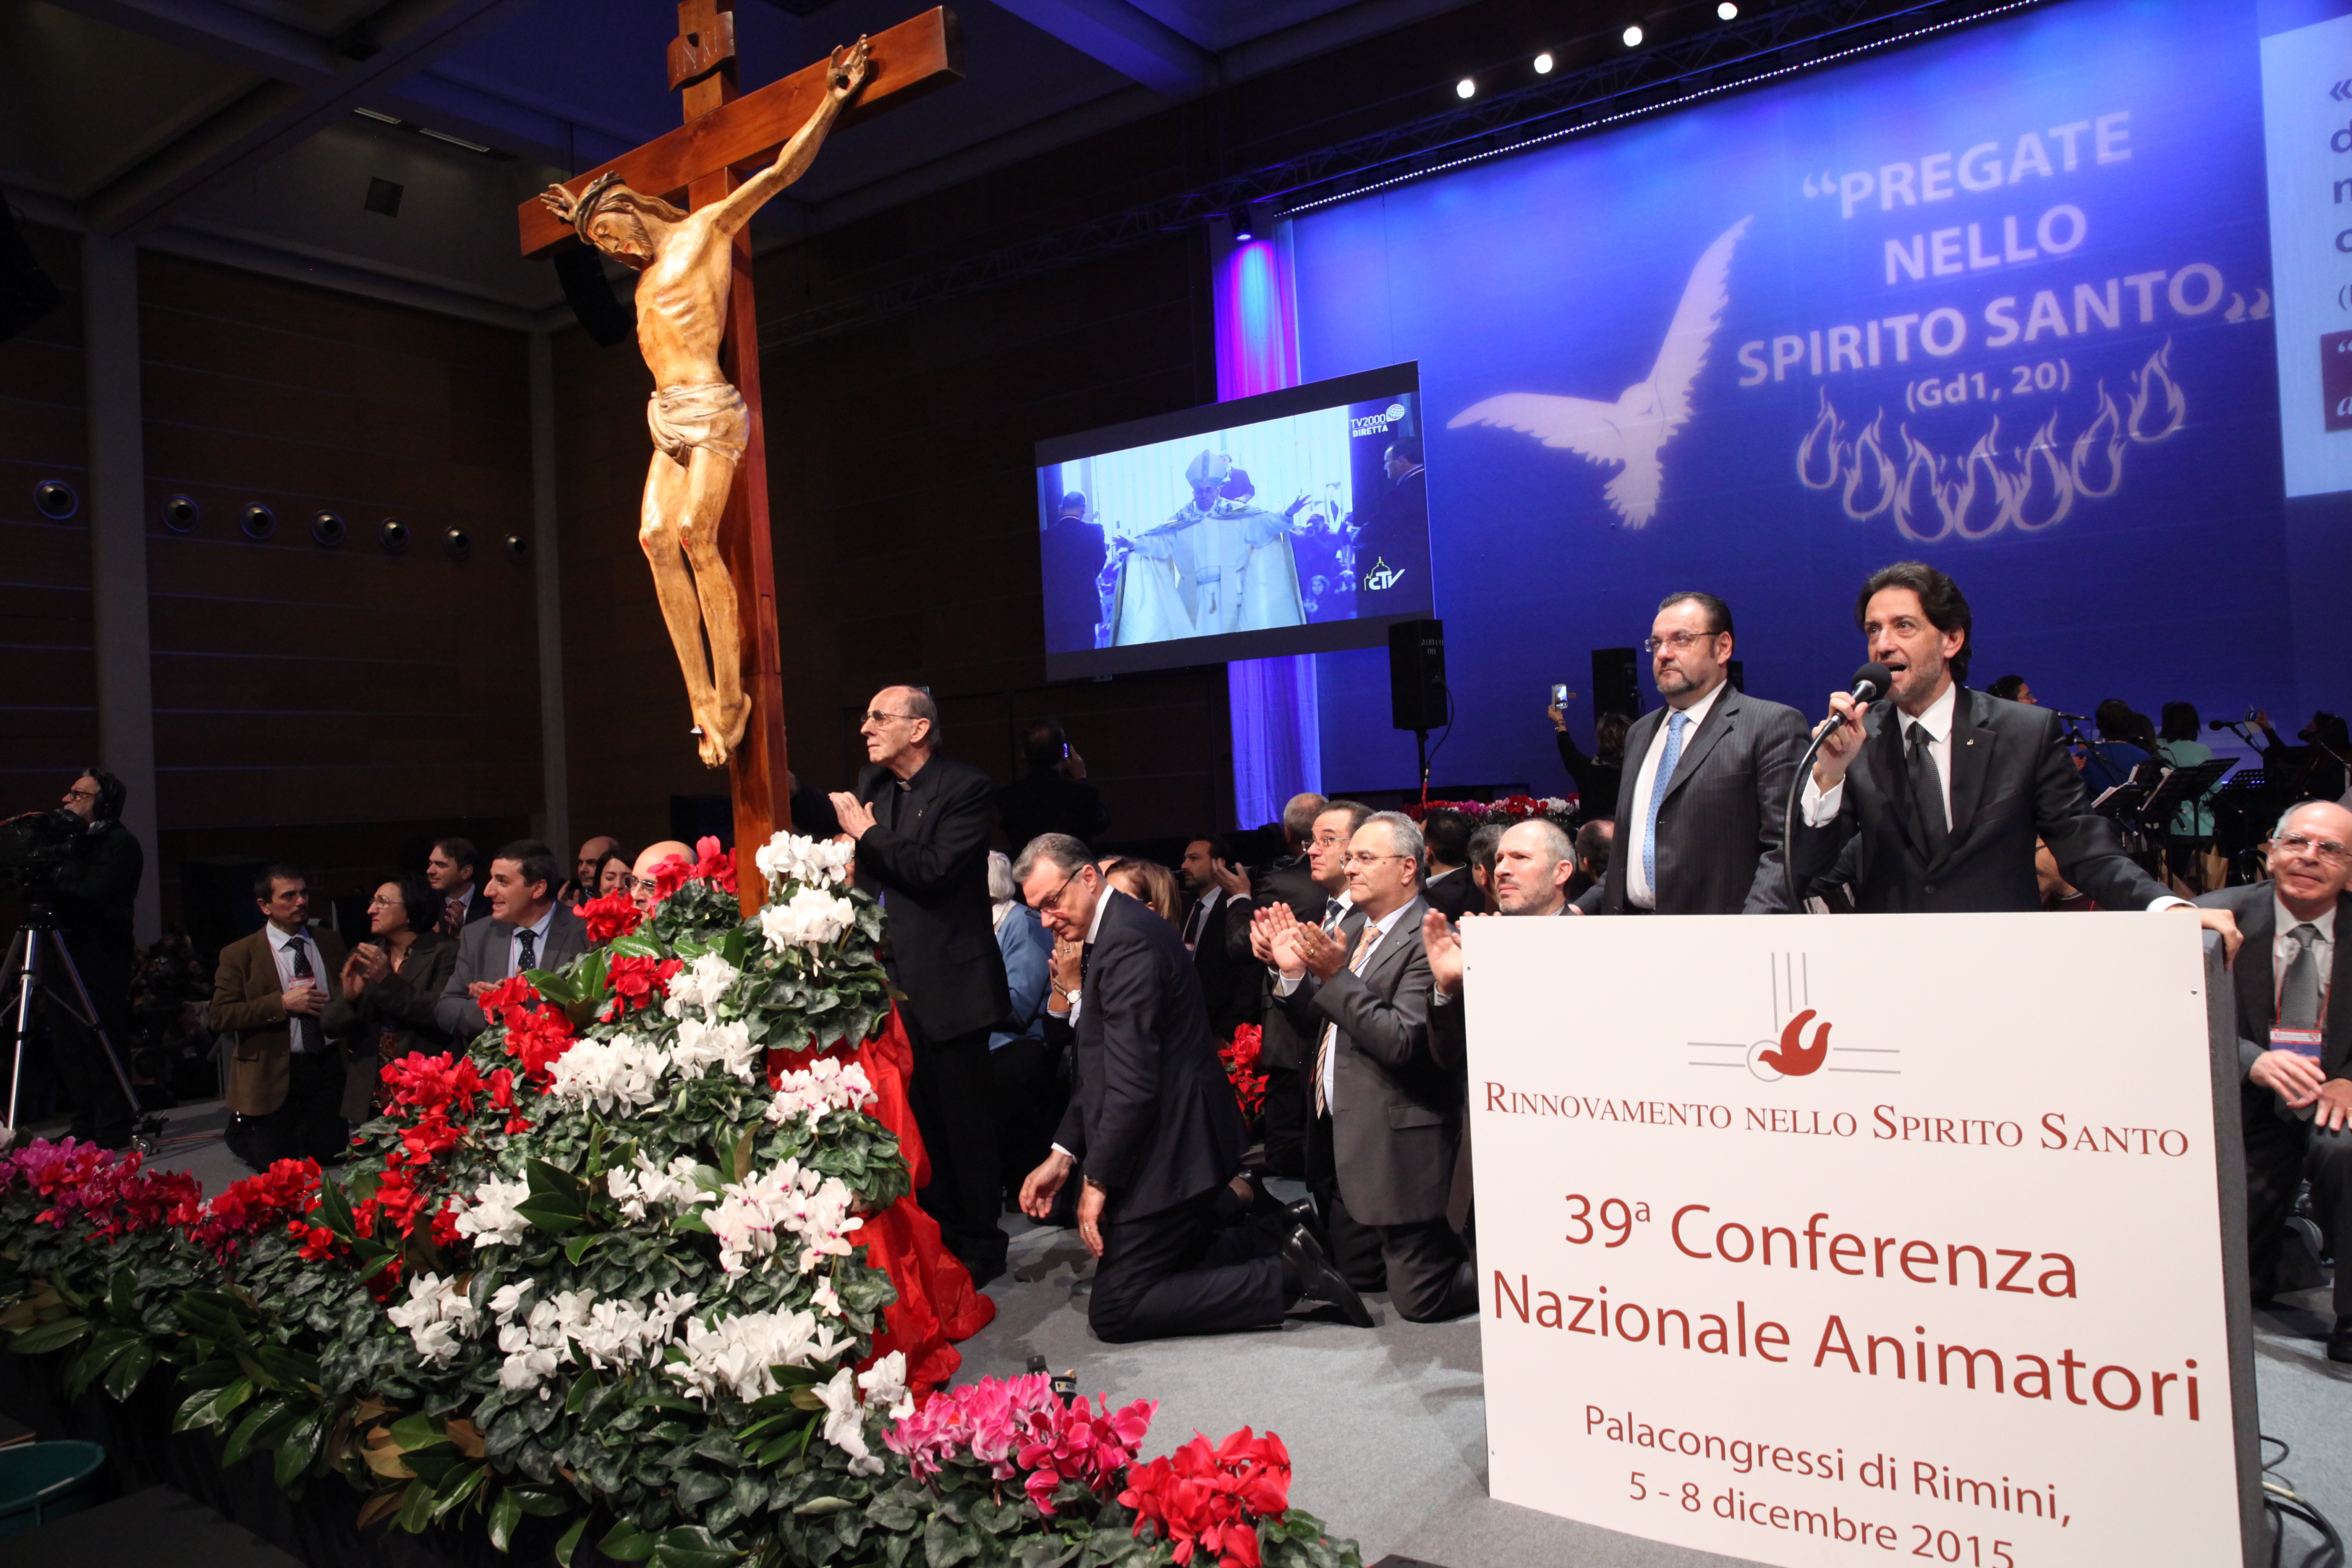 Conclusion of 39° Conferenza Nazionale Animatori Rinnovamento nello Spirito Santo